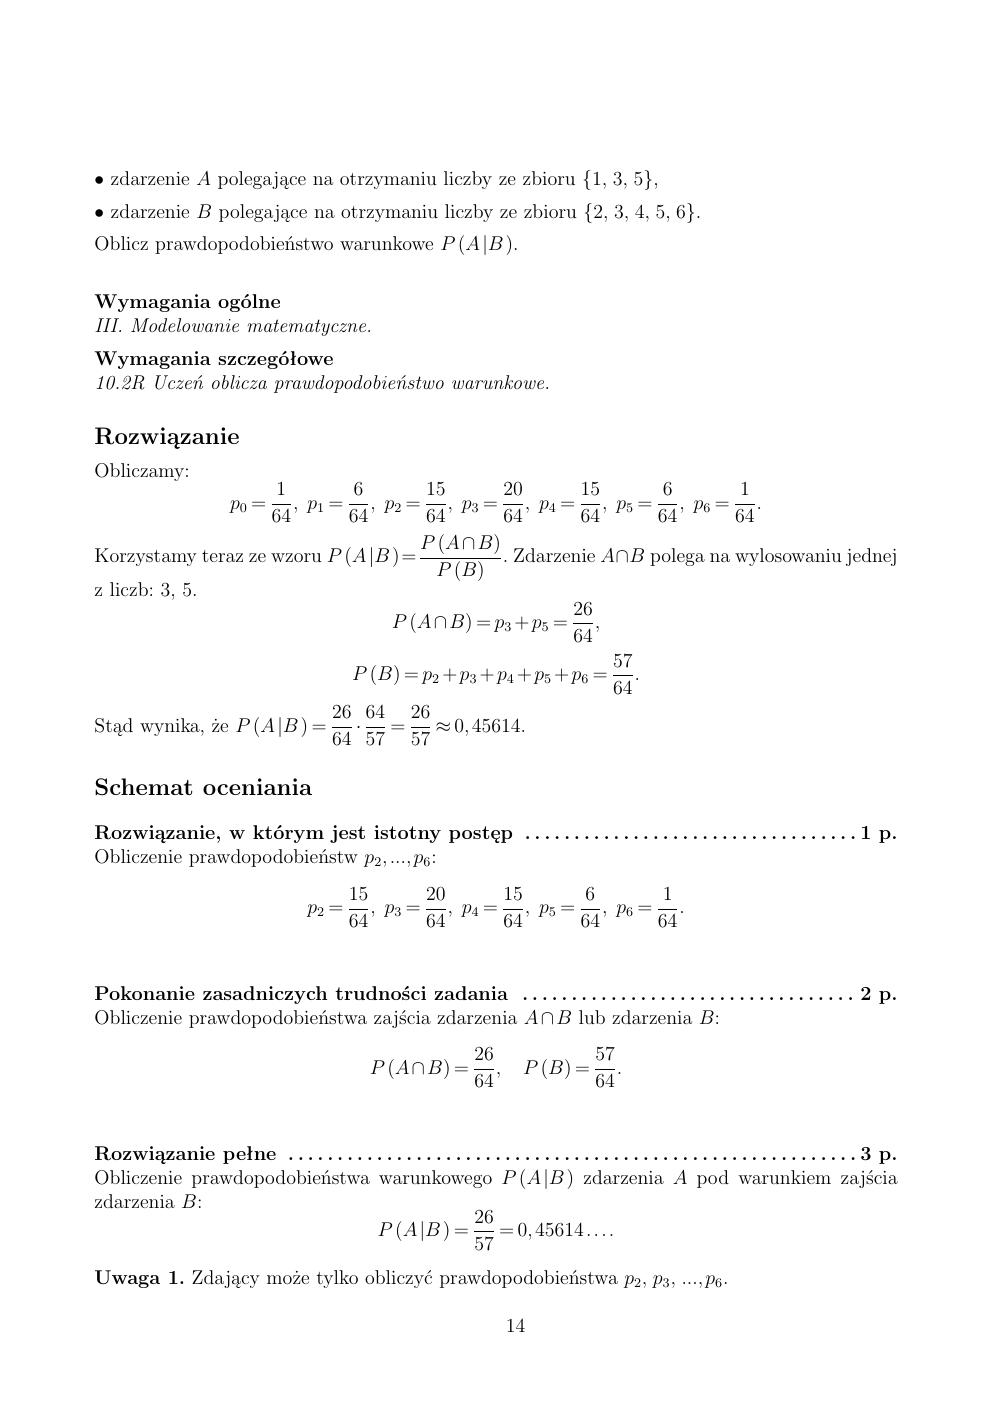 zasady oceniania - odpowiedzi - matematyka rozszerzony - matura 2015 przykładowa-14